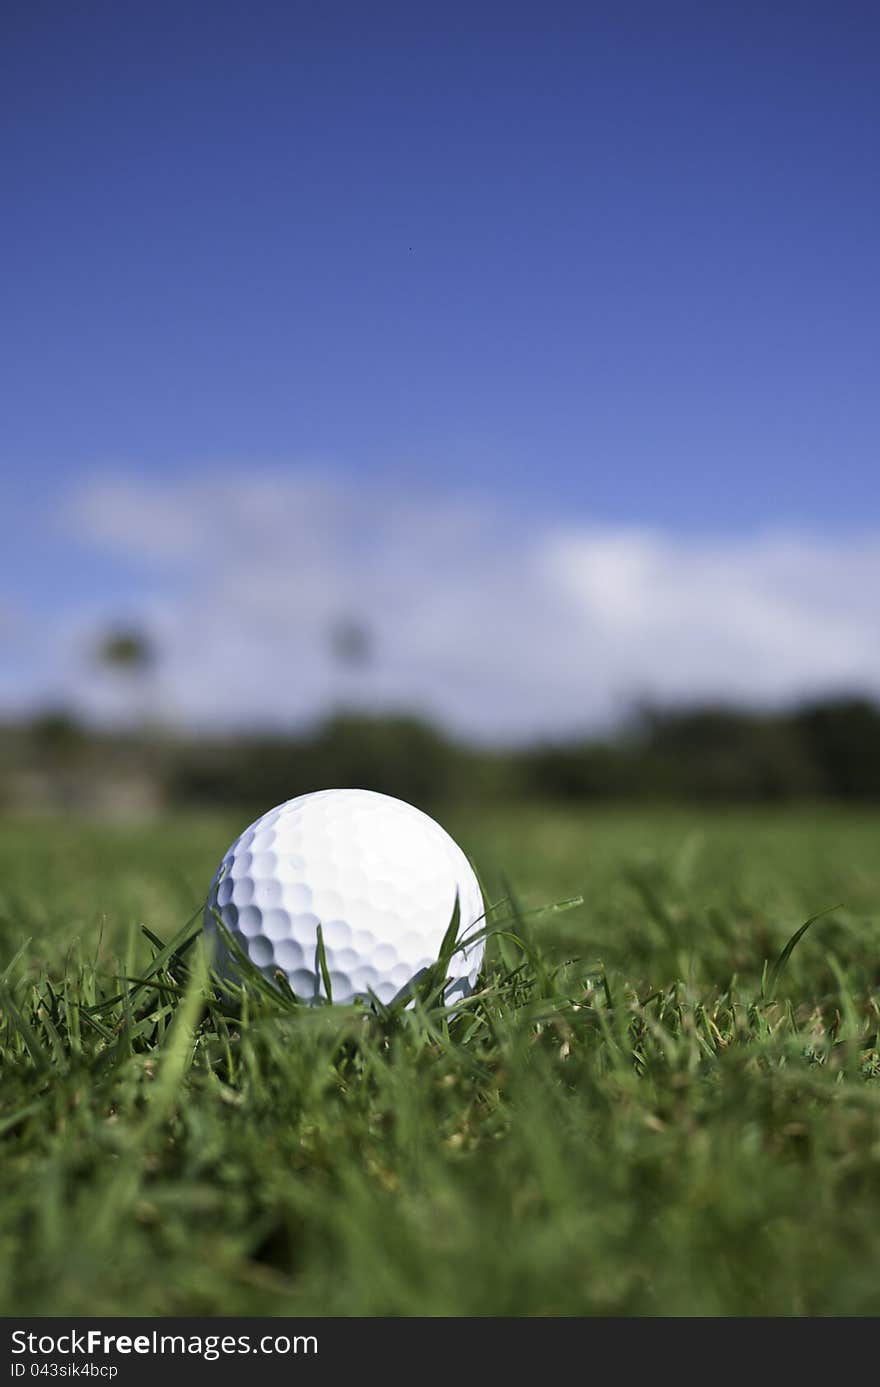 Golf ball settles in the fairway grass. Golf ball settles in the fairway grass.